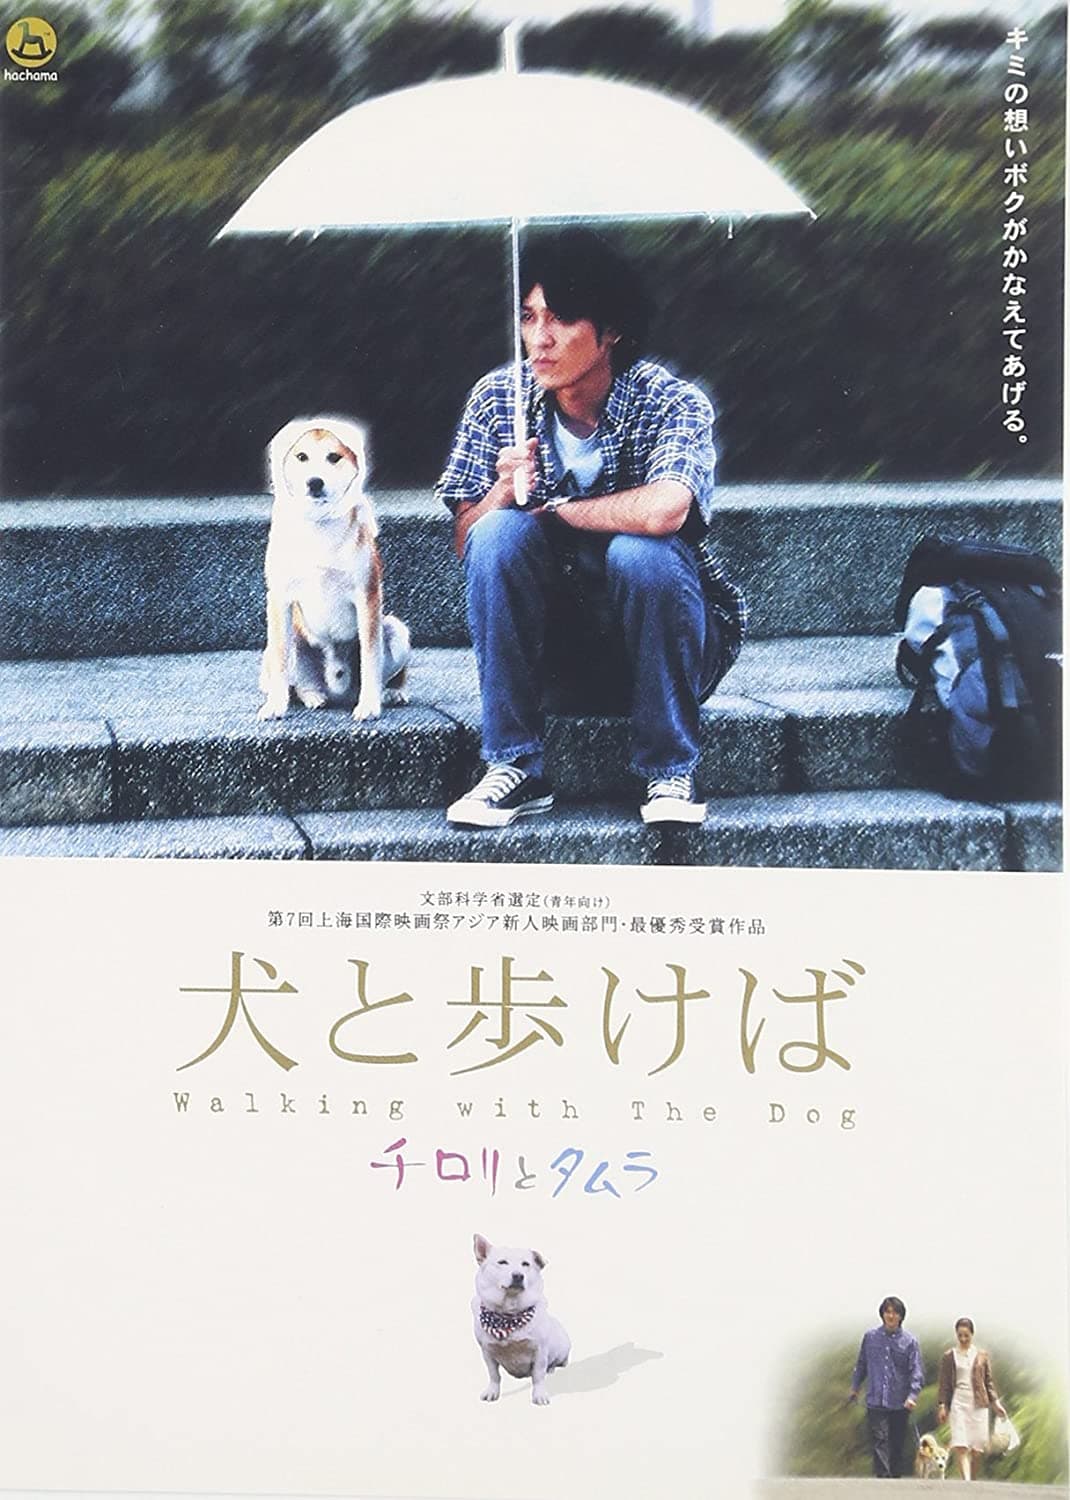 Naoki Tanaka Movies Age Biography